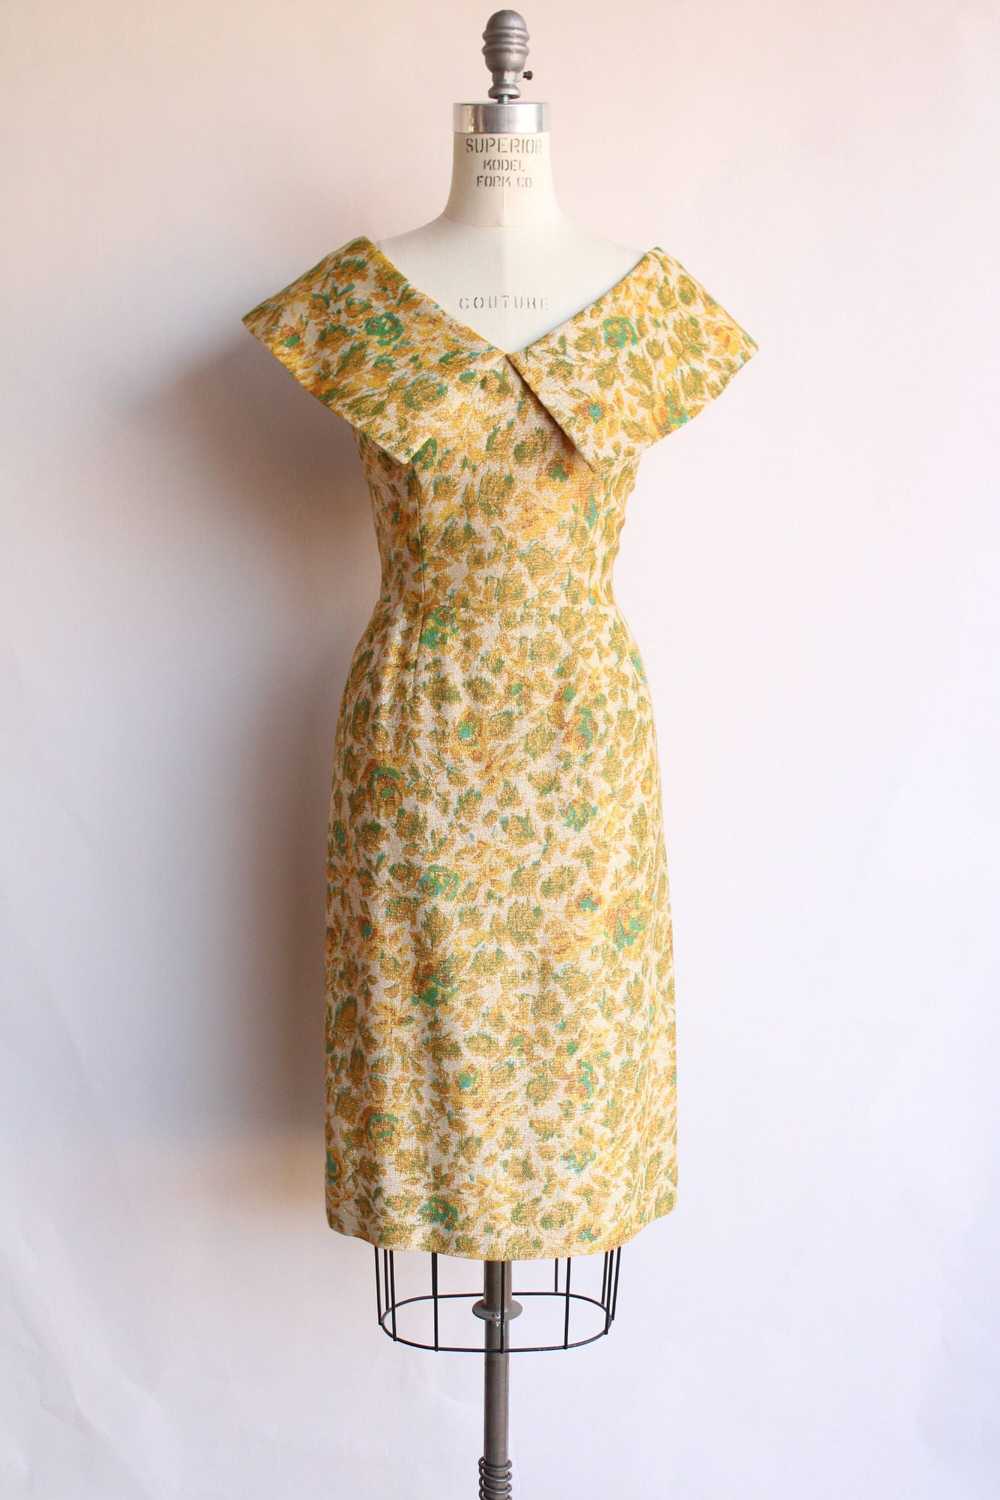 Vintage 1950s Gold Sparkly Wiggle Dress - image 1